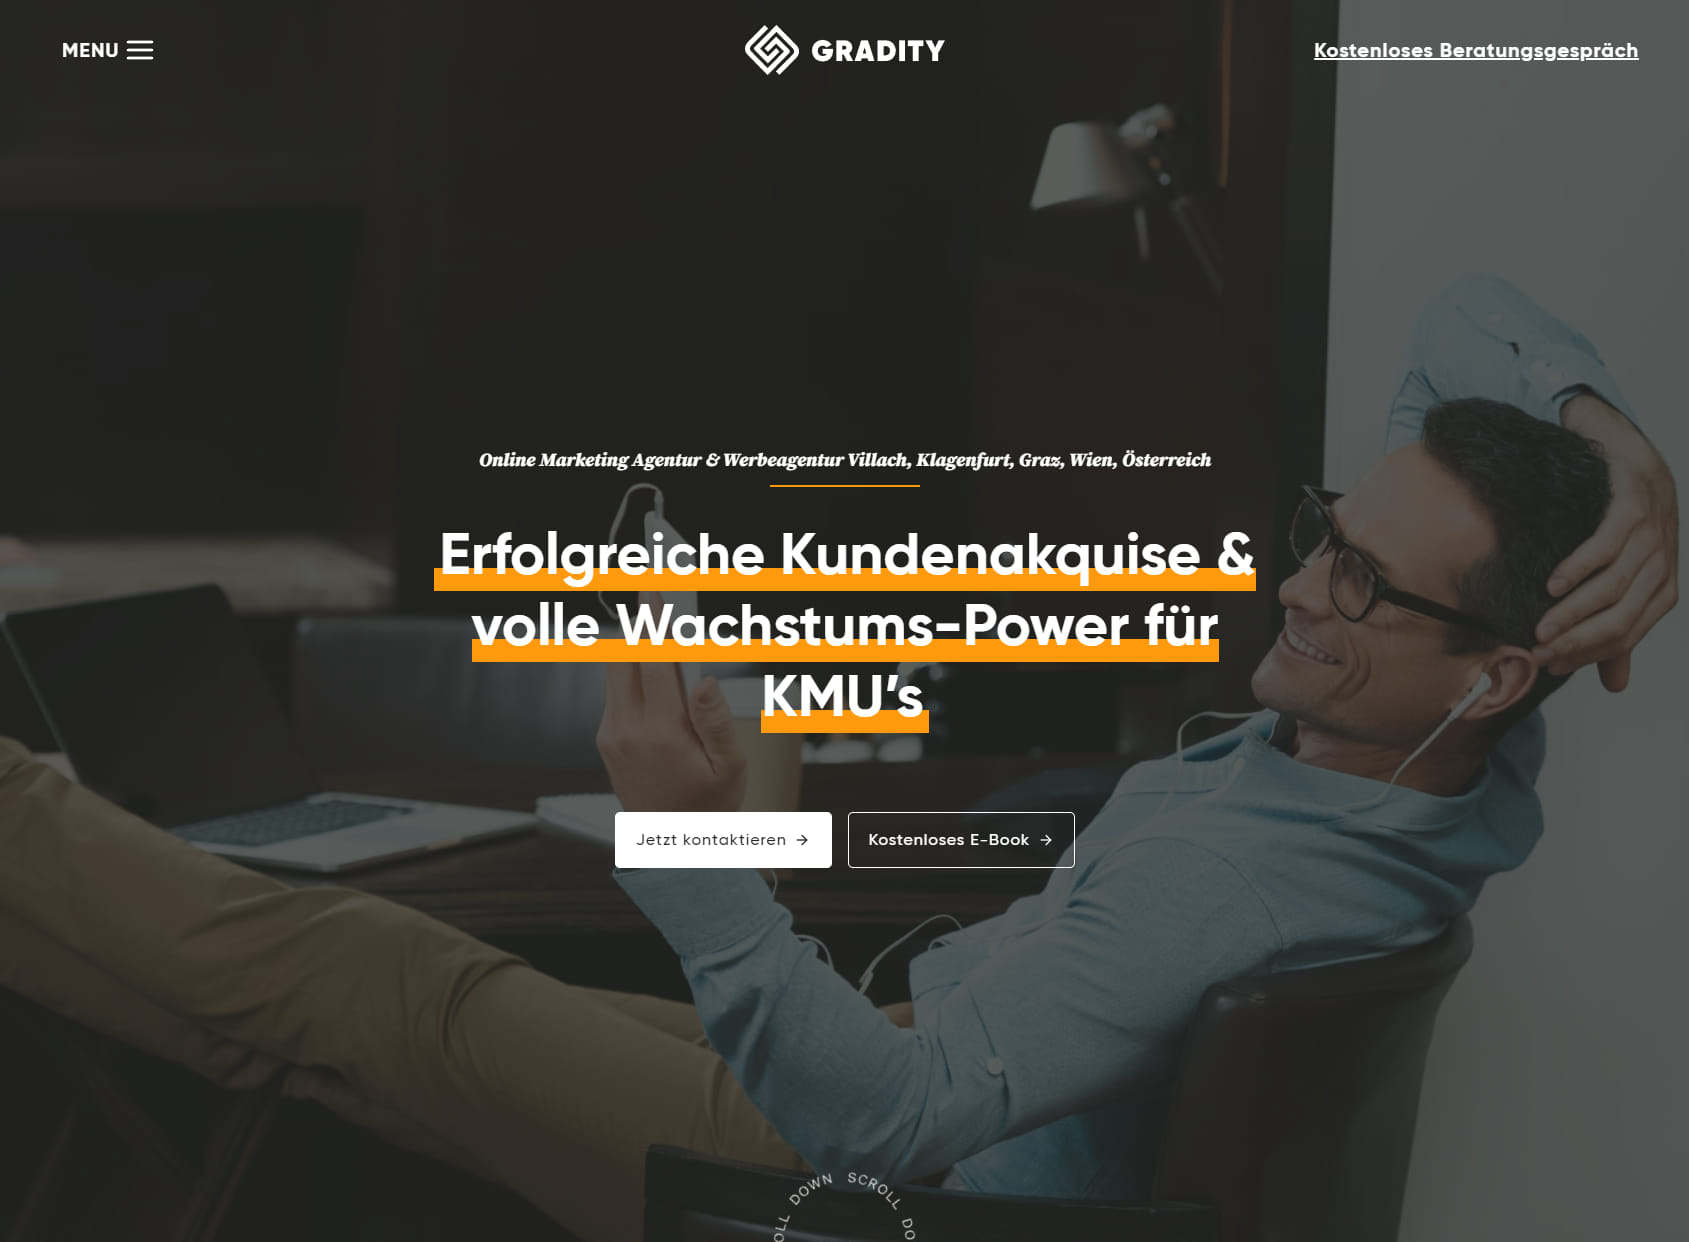 GRADITY | Online Marketing Agentur & Werbeagentur Villach, Klagenfurt, Graz, Wien, Österreich